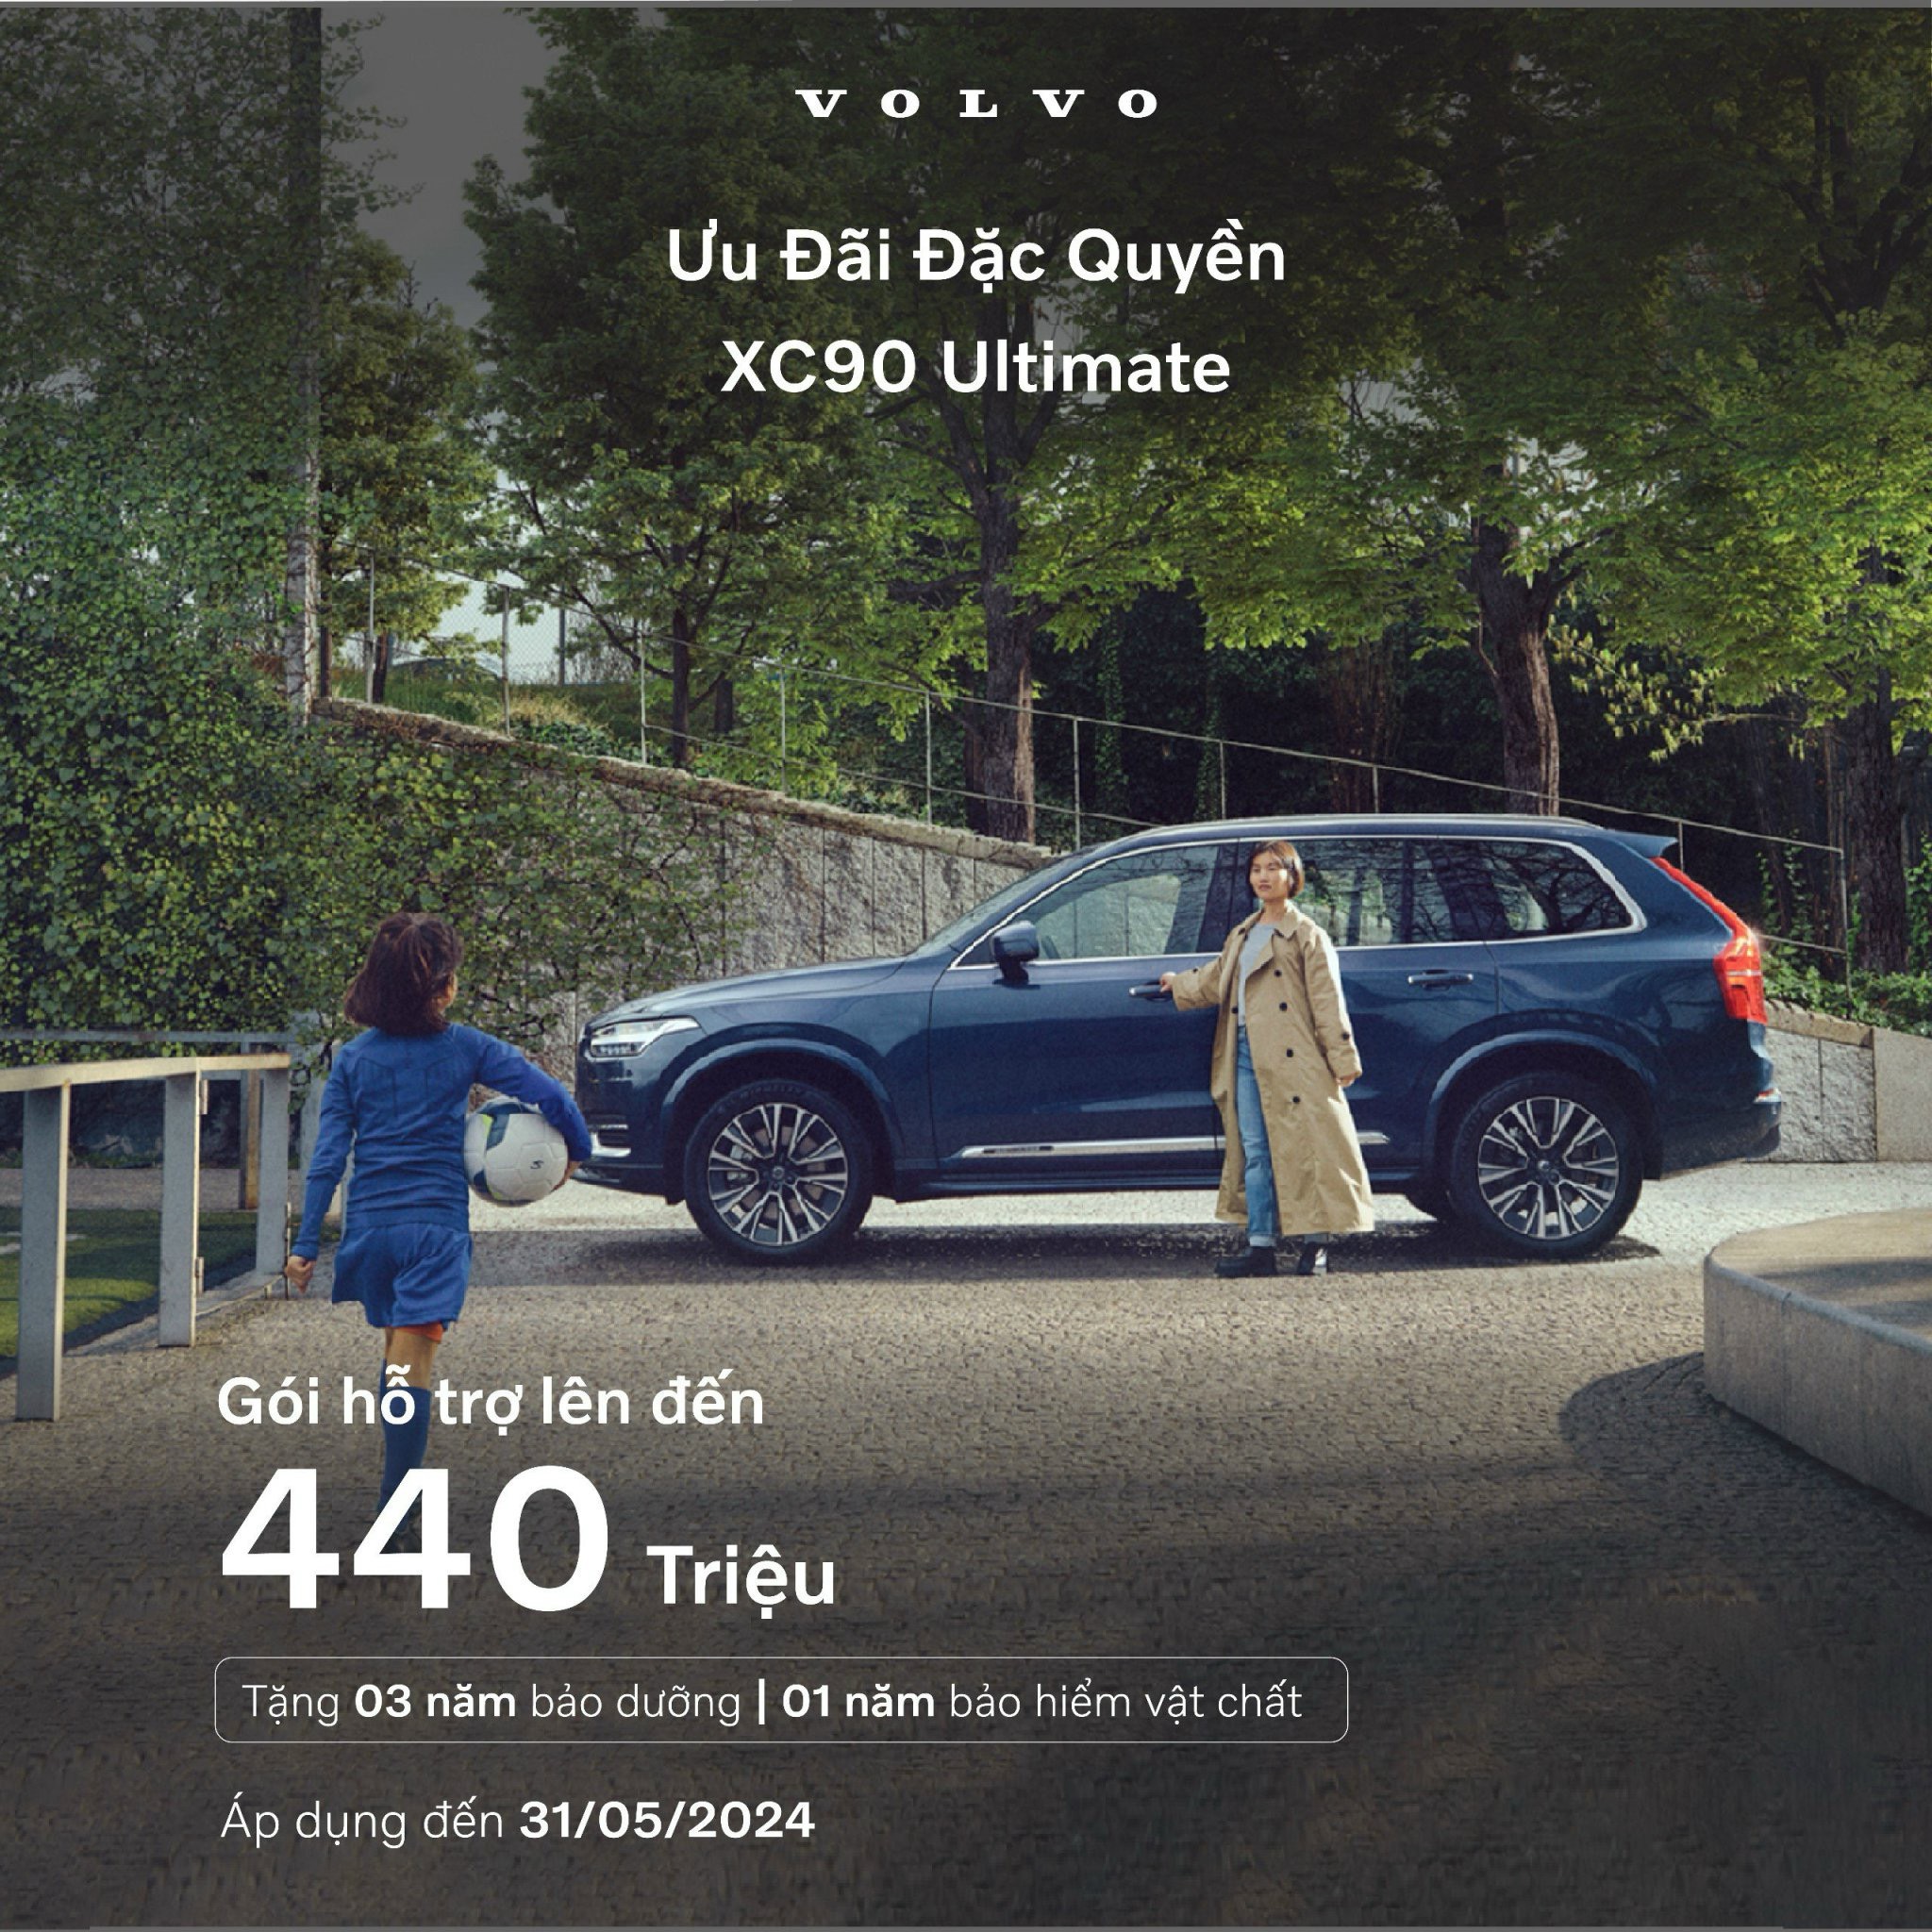 Volvo XC90 Ultimate: Chiếc SUV sang trọng và đẳng cấp cùng ưu đãi độc quyền